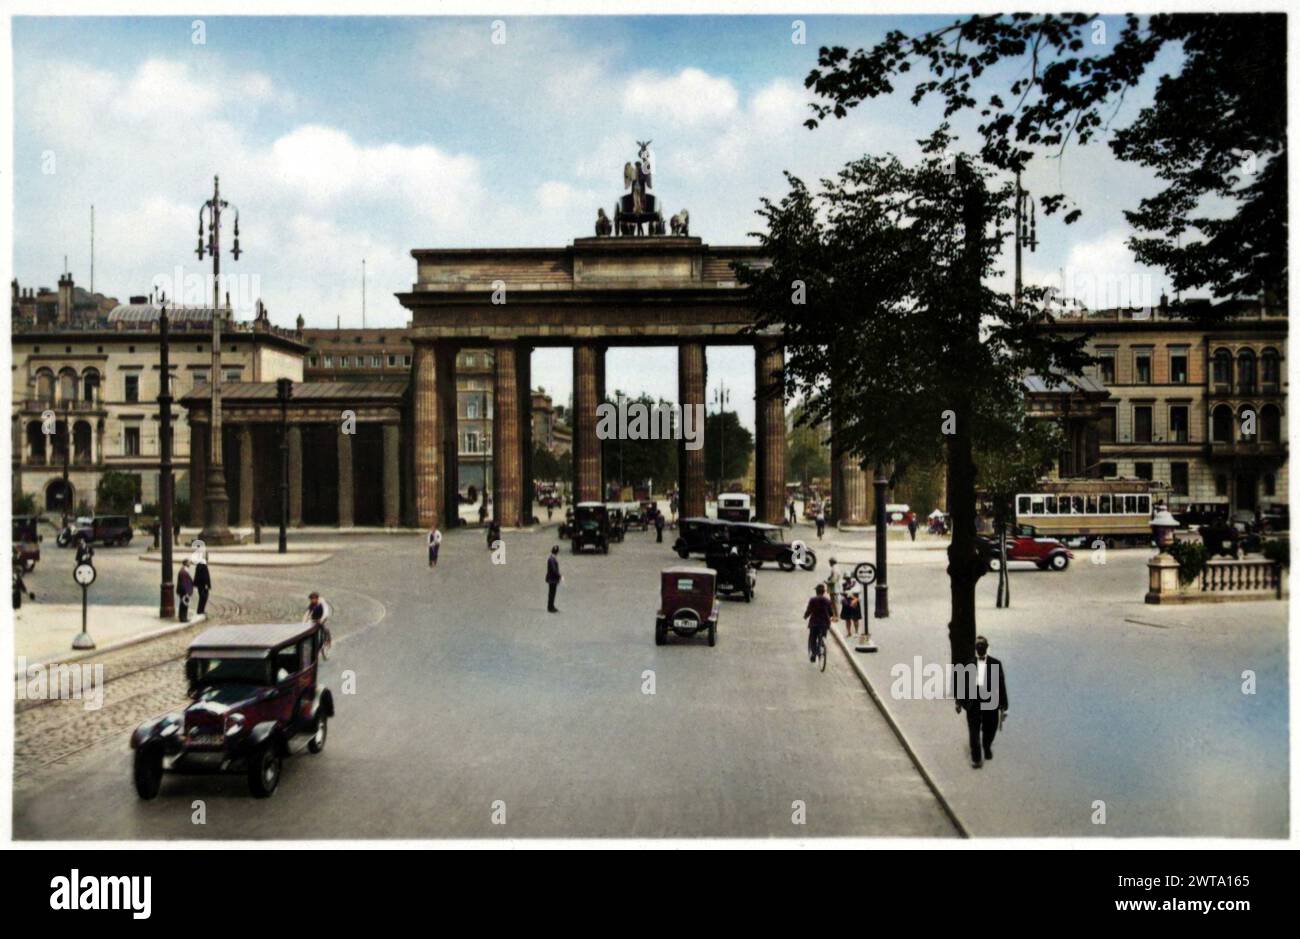 1928 c. , BERLIN , DEUTSCHLAND : das BRANDENBURGER Tor. Es handelt sich um ein neoklassizistisches Denkmal aus dem 18. Jahrhundert in Berlin , das auf Befehl des preußischen Königs Friedrich Wilhelm II. Errichtet wurde, nachdem er durch die Niederschlagung der niederländischen Volksunruhen die Macht der Orangen wiederhergestellt hatte . Unbekannter Fotograf. DIGITAL COLORIERT. - GERMANIA - PORTA DI BRANDEBURGO - BERLINO - Foto STORICHE - GESCHICHTE - GEOGRAFIE - GEOGRAPHIE - ARCHITEKTUR - ARCHITEKTUR - Foto STORICA - PANORAMA - STILE NEOCLASSICO - Autos - automobili - traffico urbanocittadino - urbaner Verkehr --- Archivio GBB Stockfoto